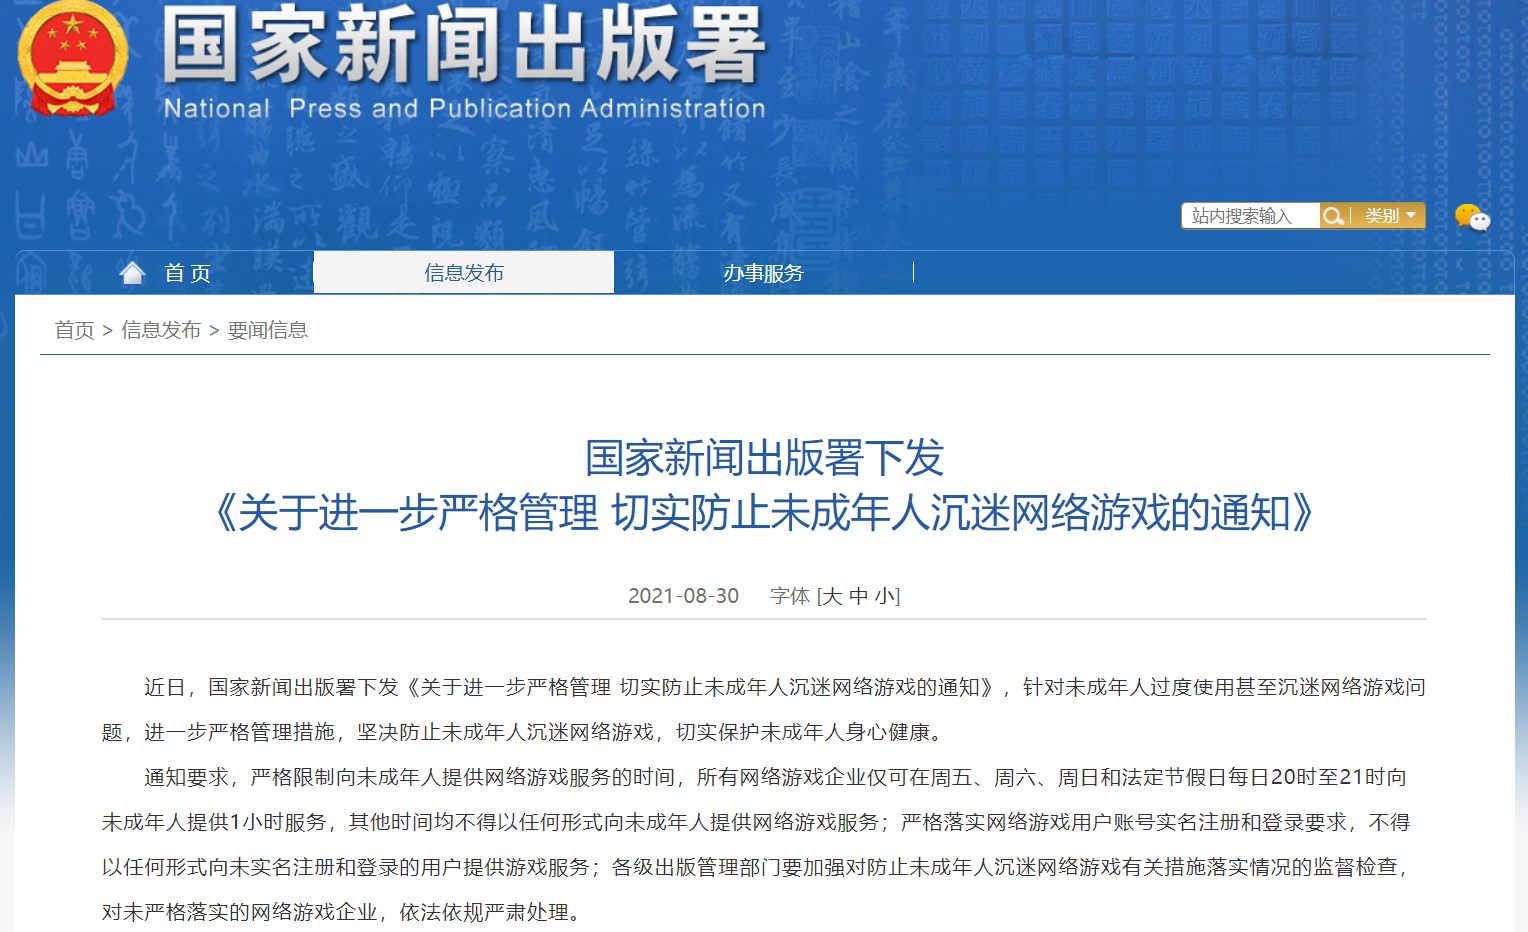 중국 국가신문출판서가 통지한 미성년자 온라인 게임 이용 규제 전문 (홈페이지 갈무리)